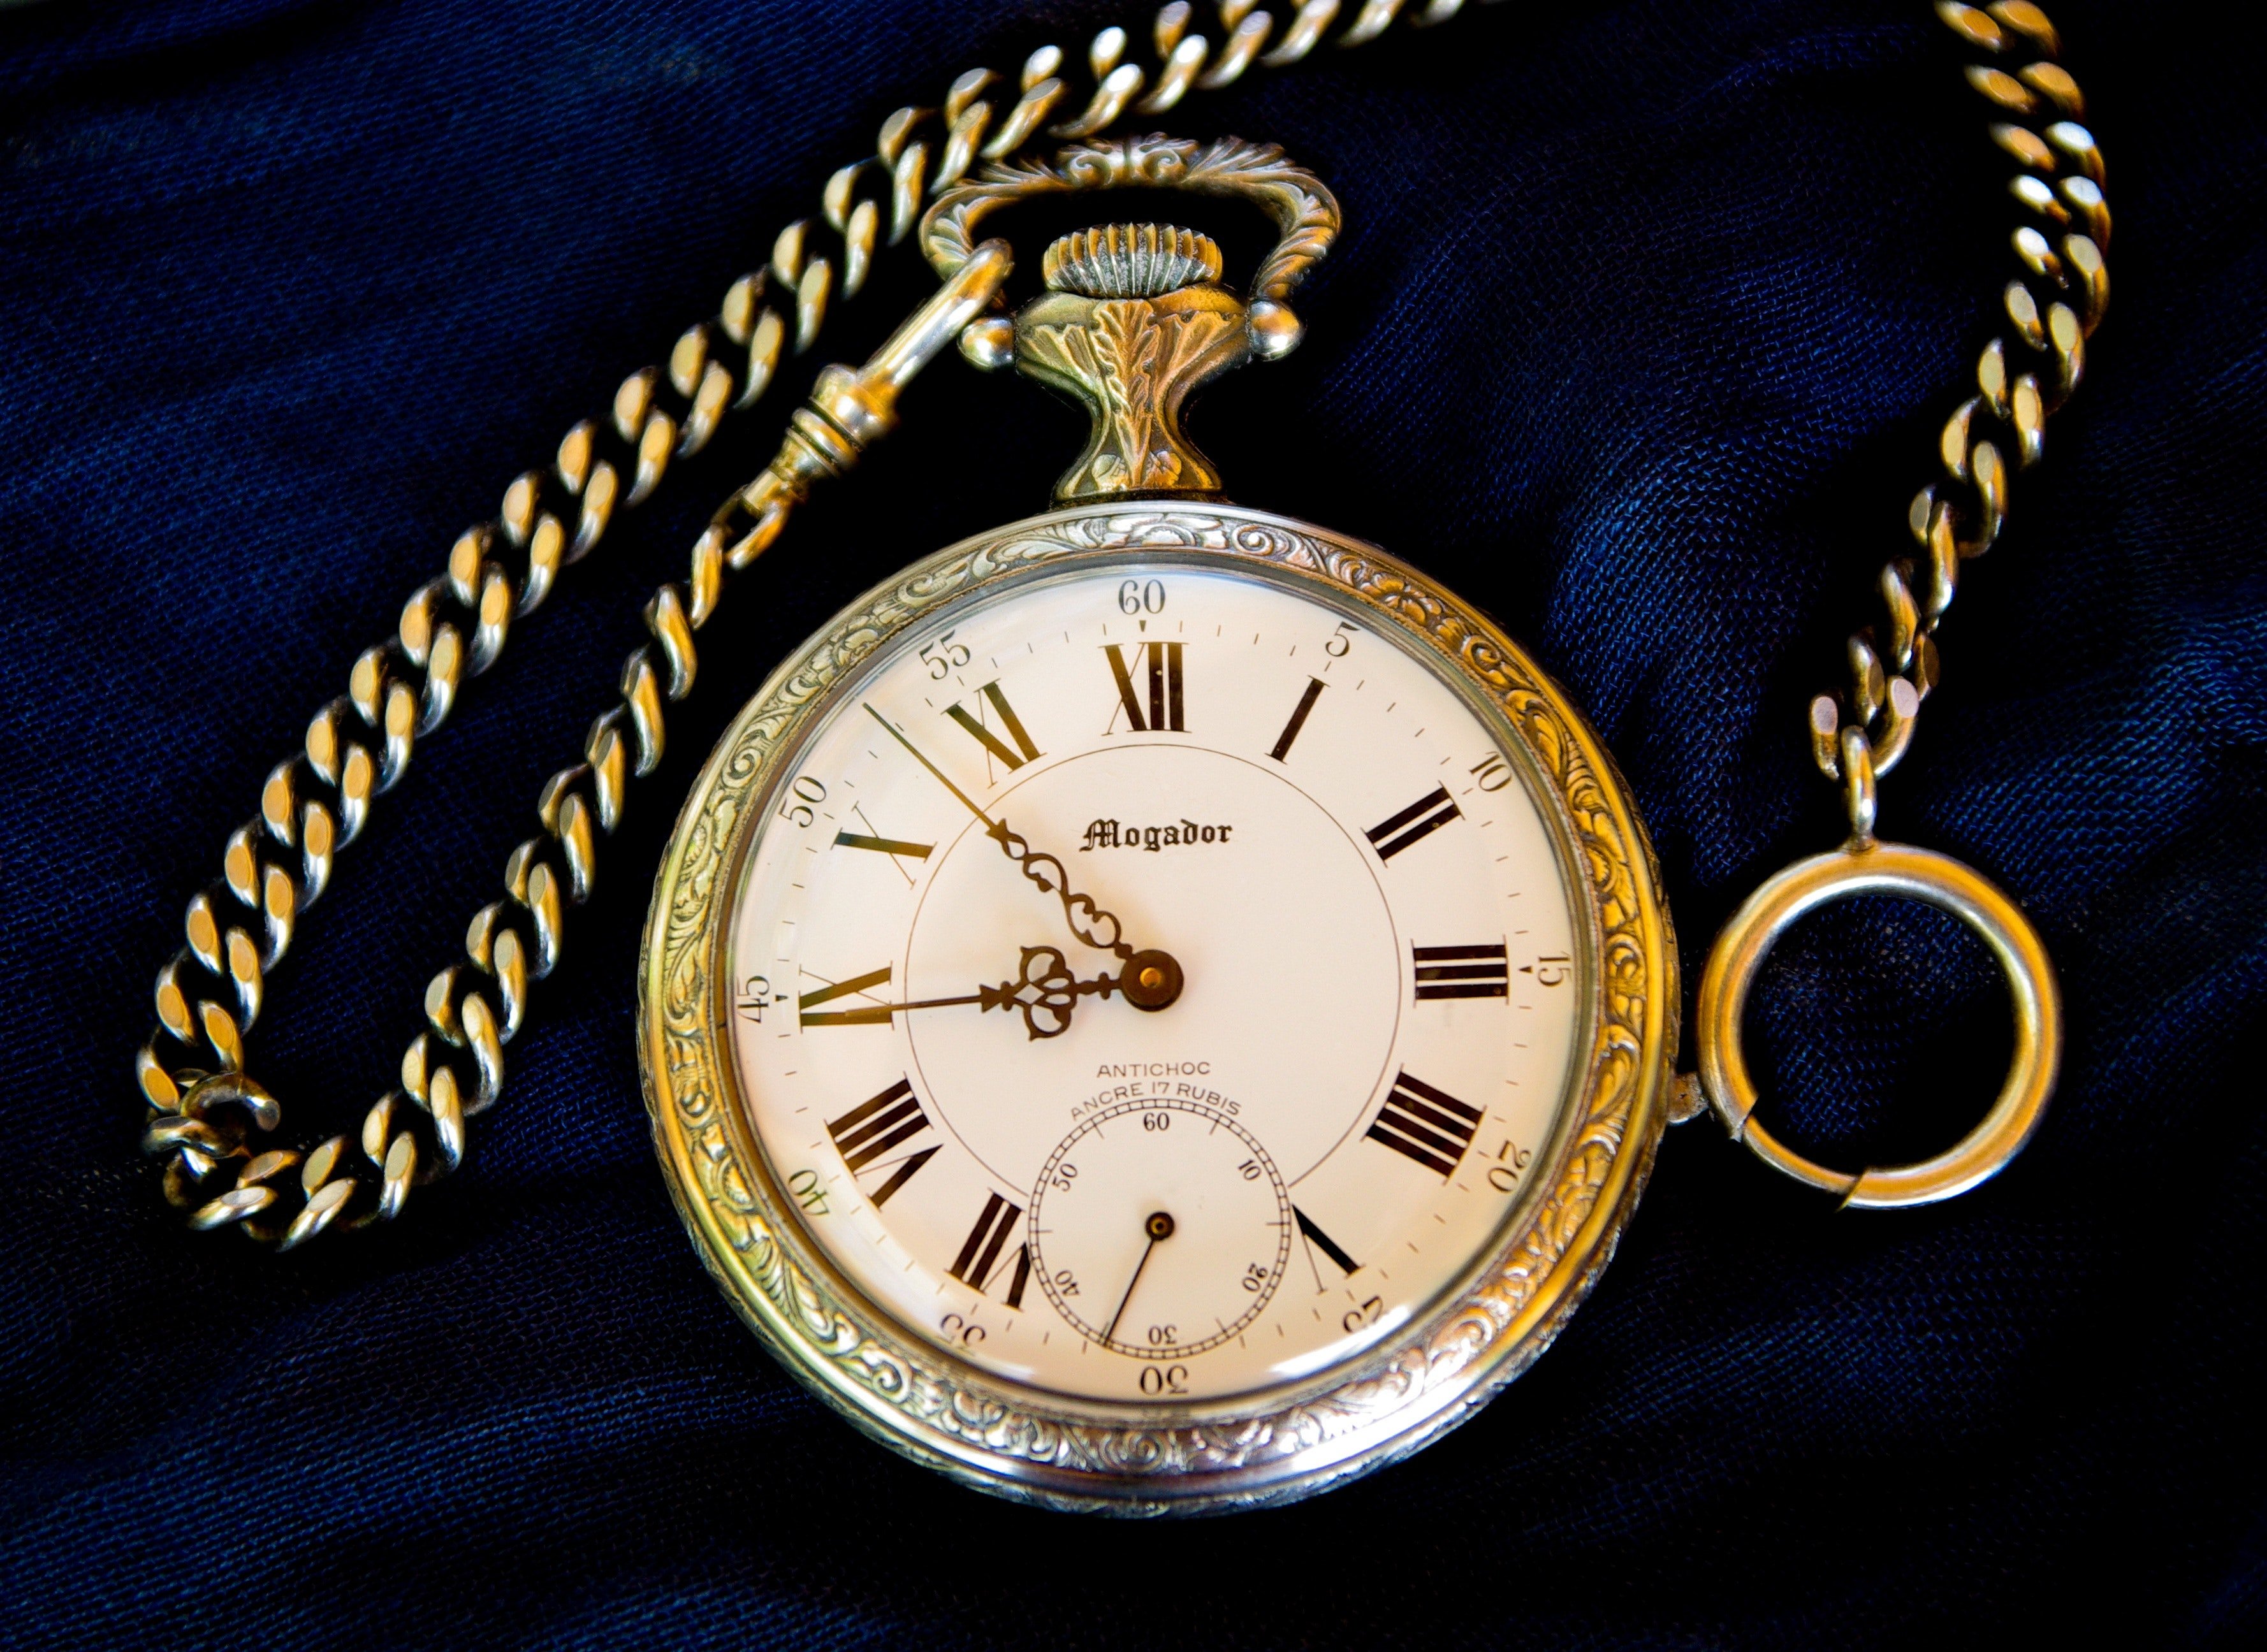 Antiguo reloj de bolsillo. Foto: Unsplash